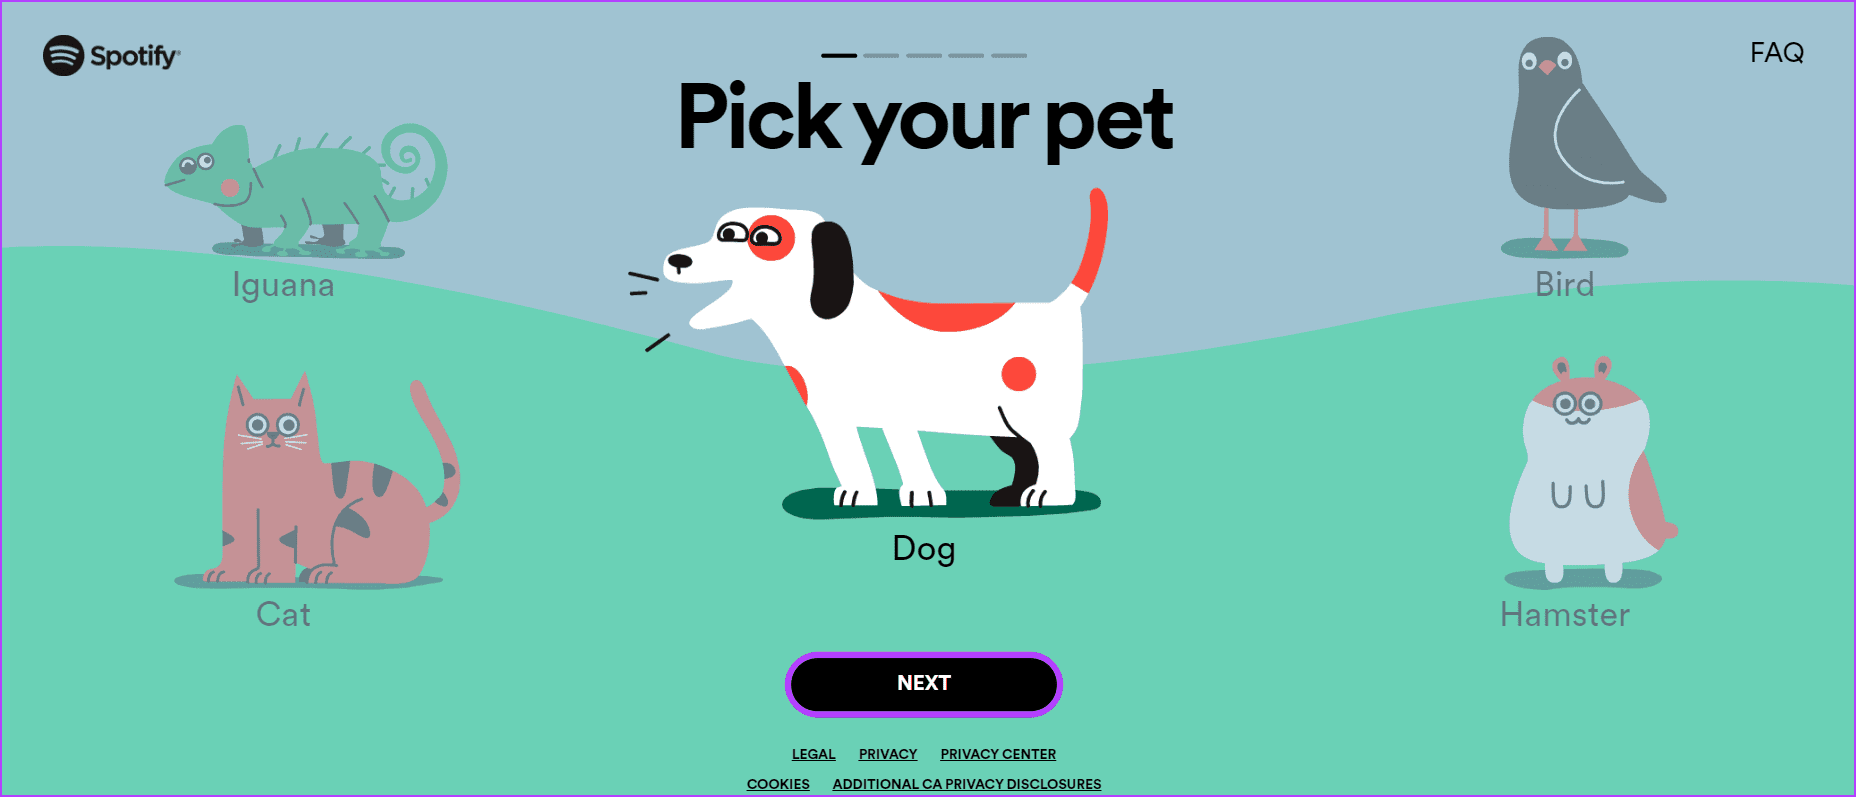 Select your animal